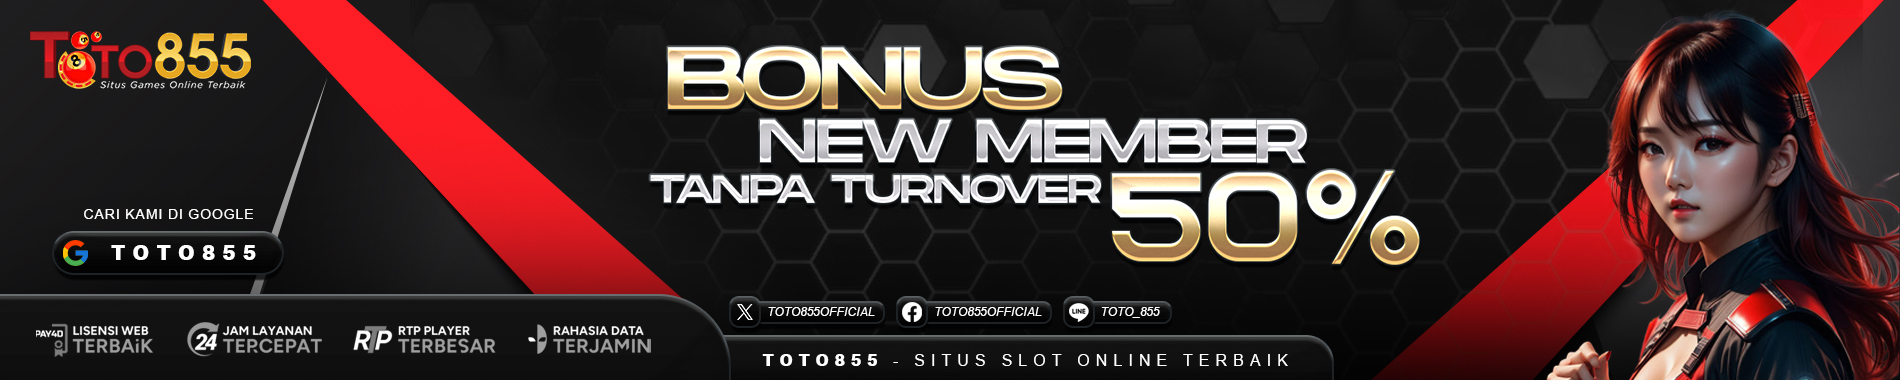 Bonus New Member - New